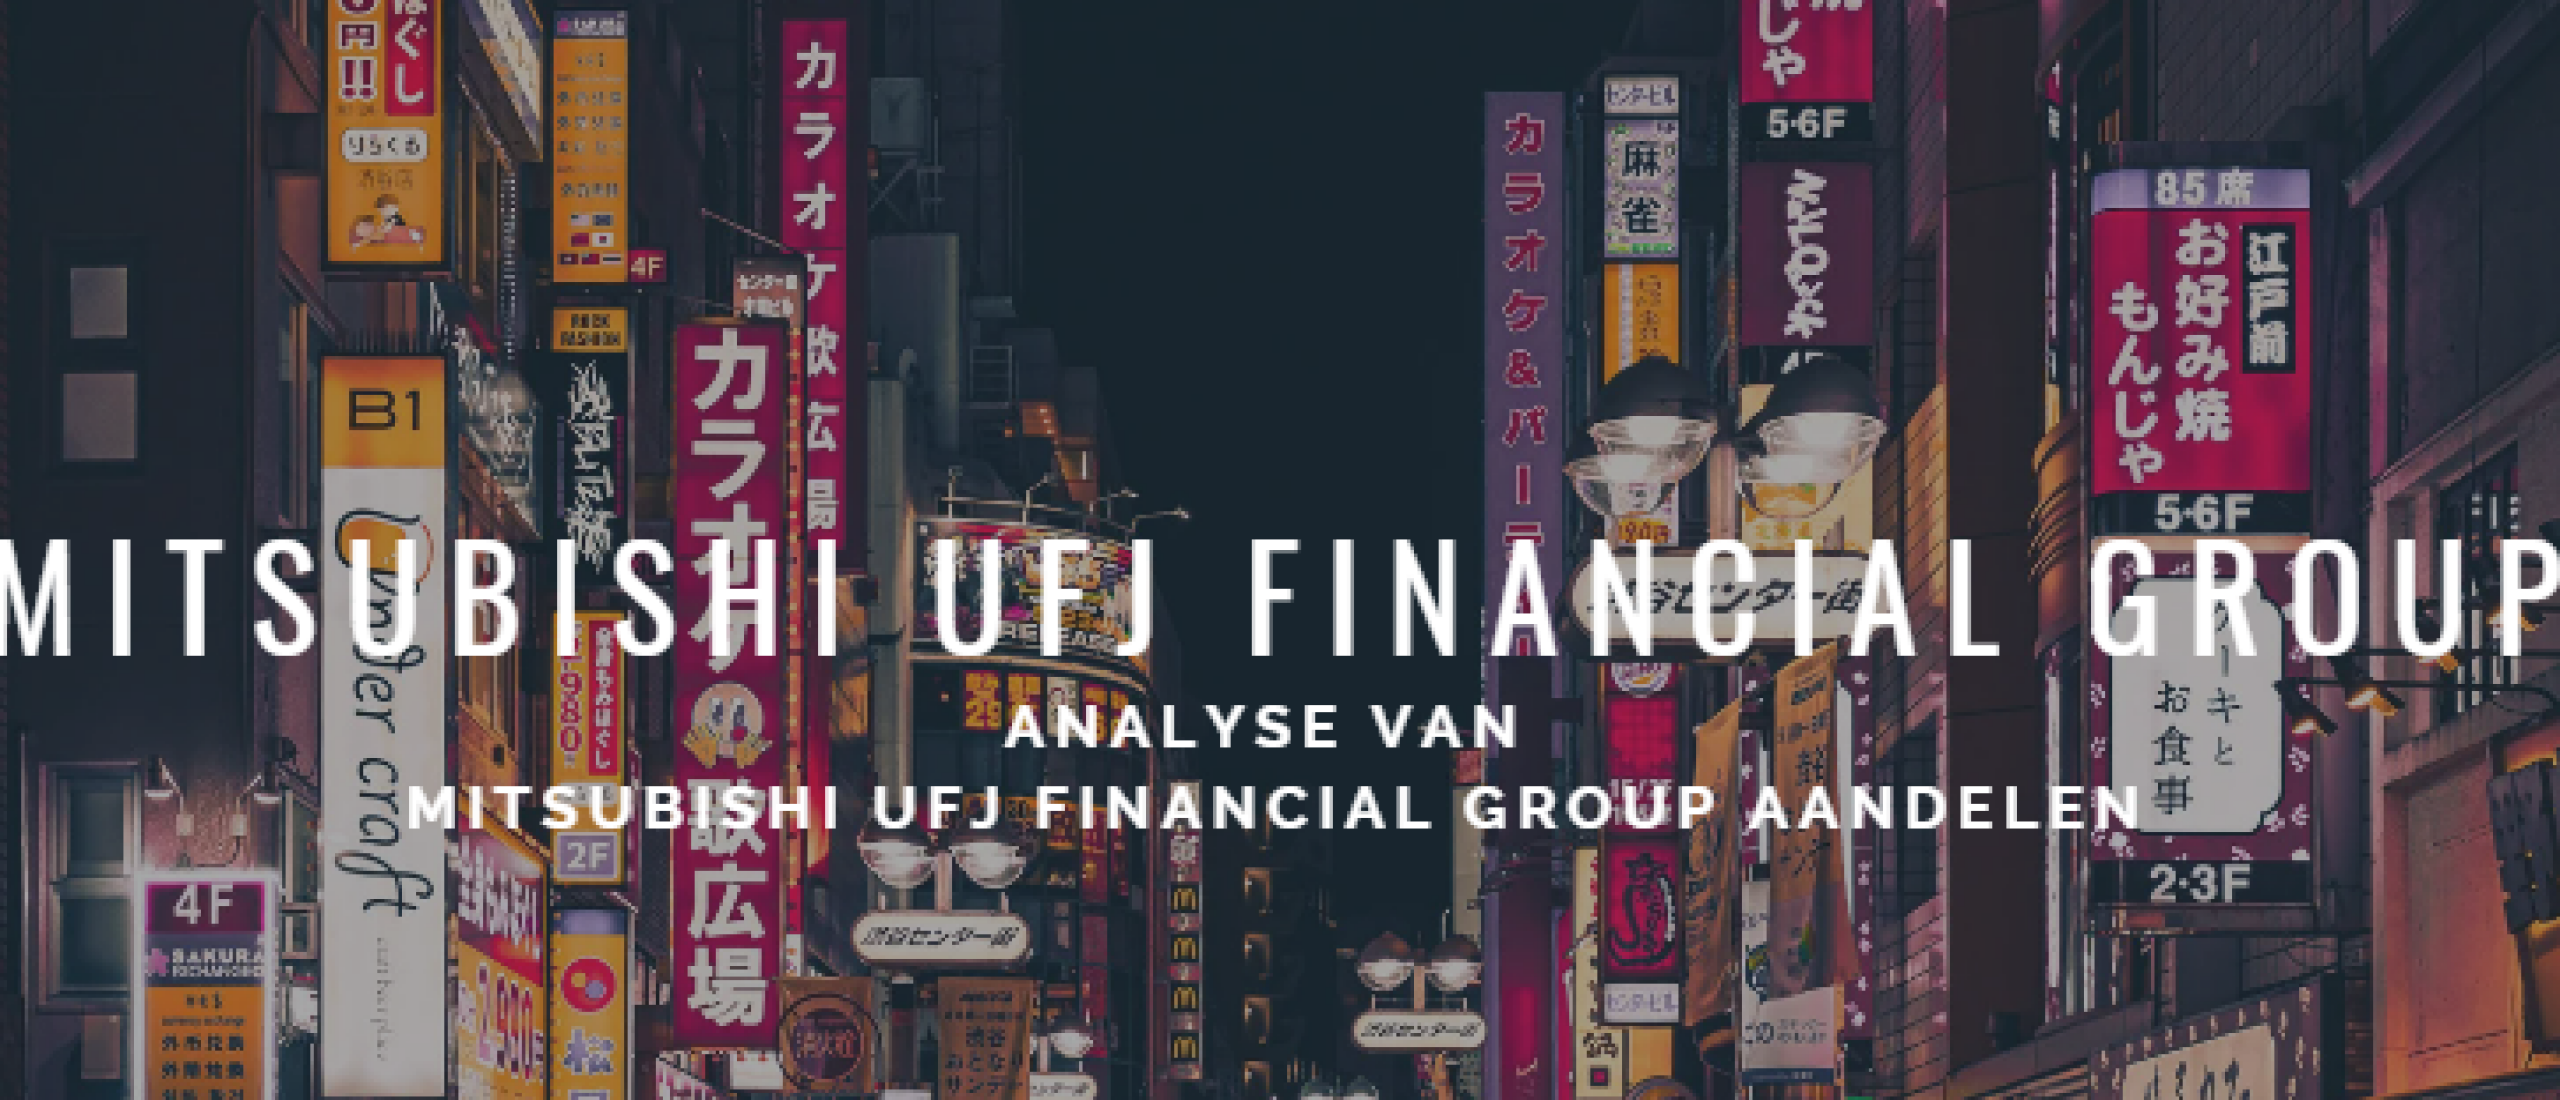 Mitsubishi UFJ Financial Group aandelen kopen? Analyse +29% Groei | Happy Investors